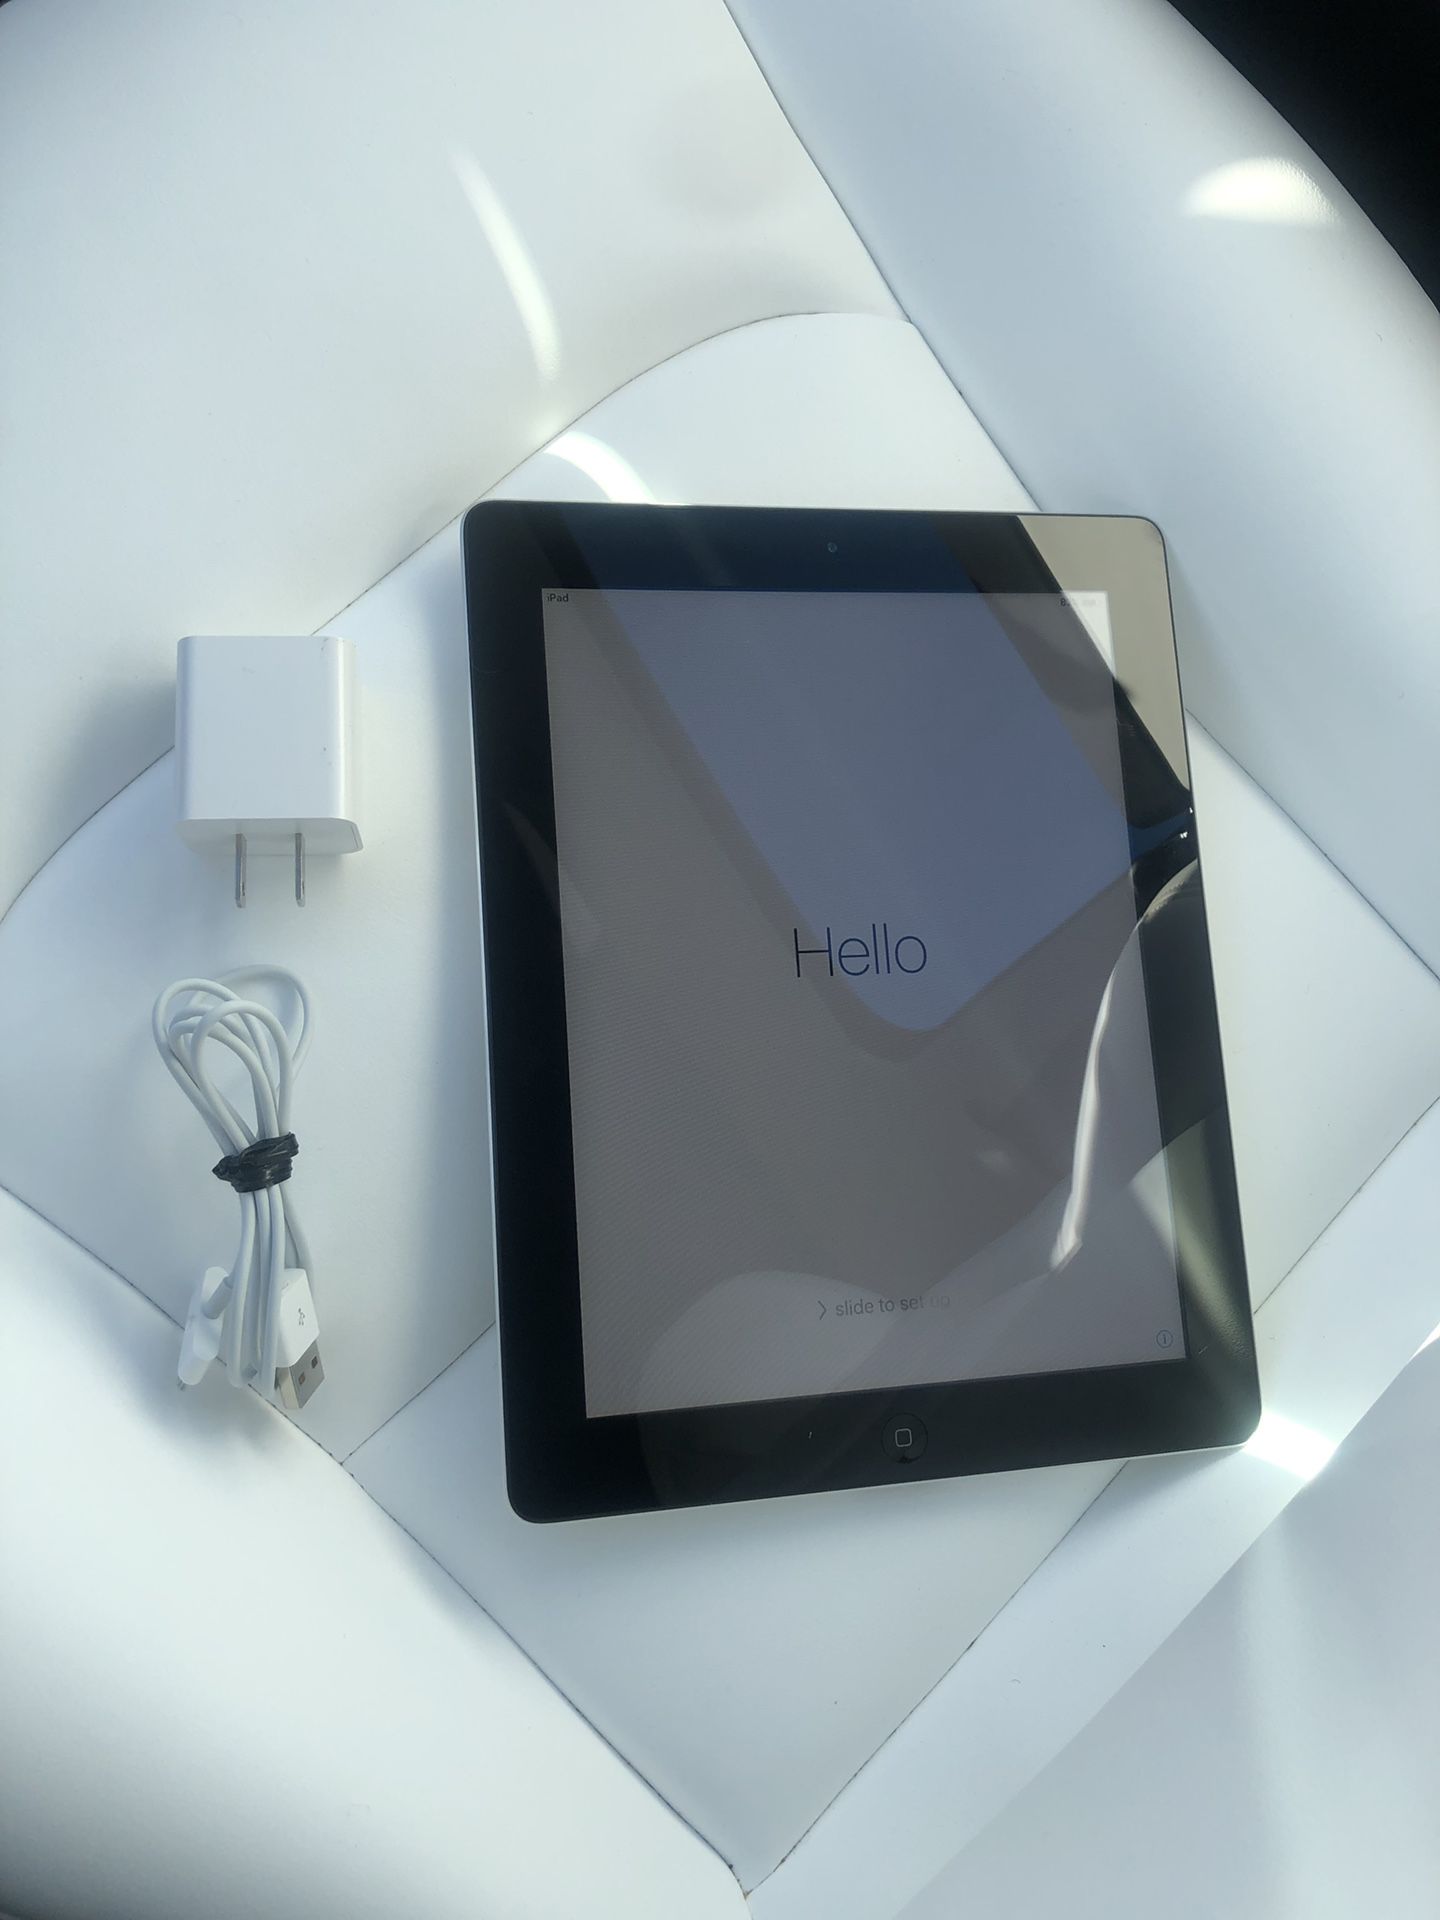 Apple iPad 2 (Black) WiFi